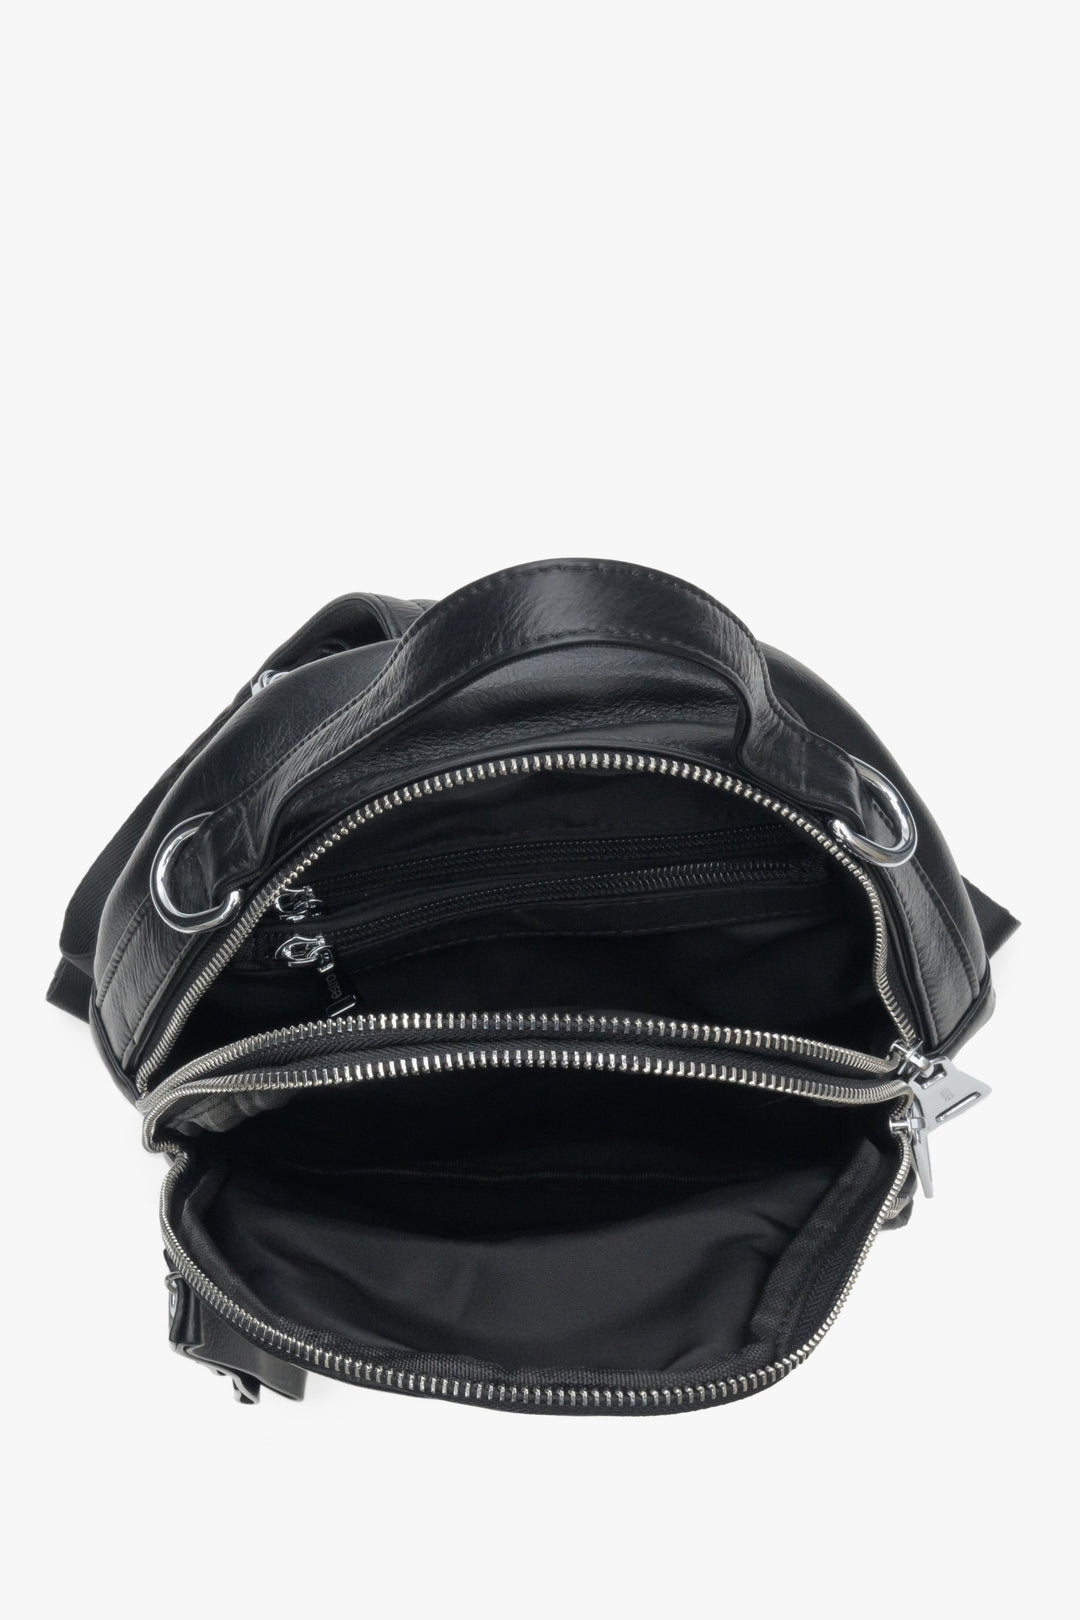 Damski plecak w kolorze czarnym ze skóry naturalnej Estro - zbliżenie na wnętrze modelu.